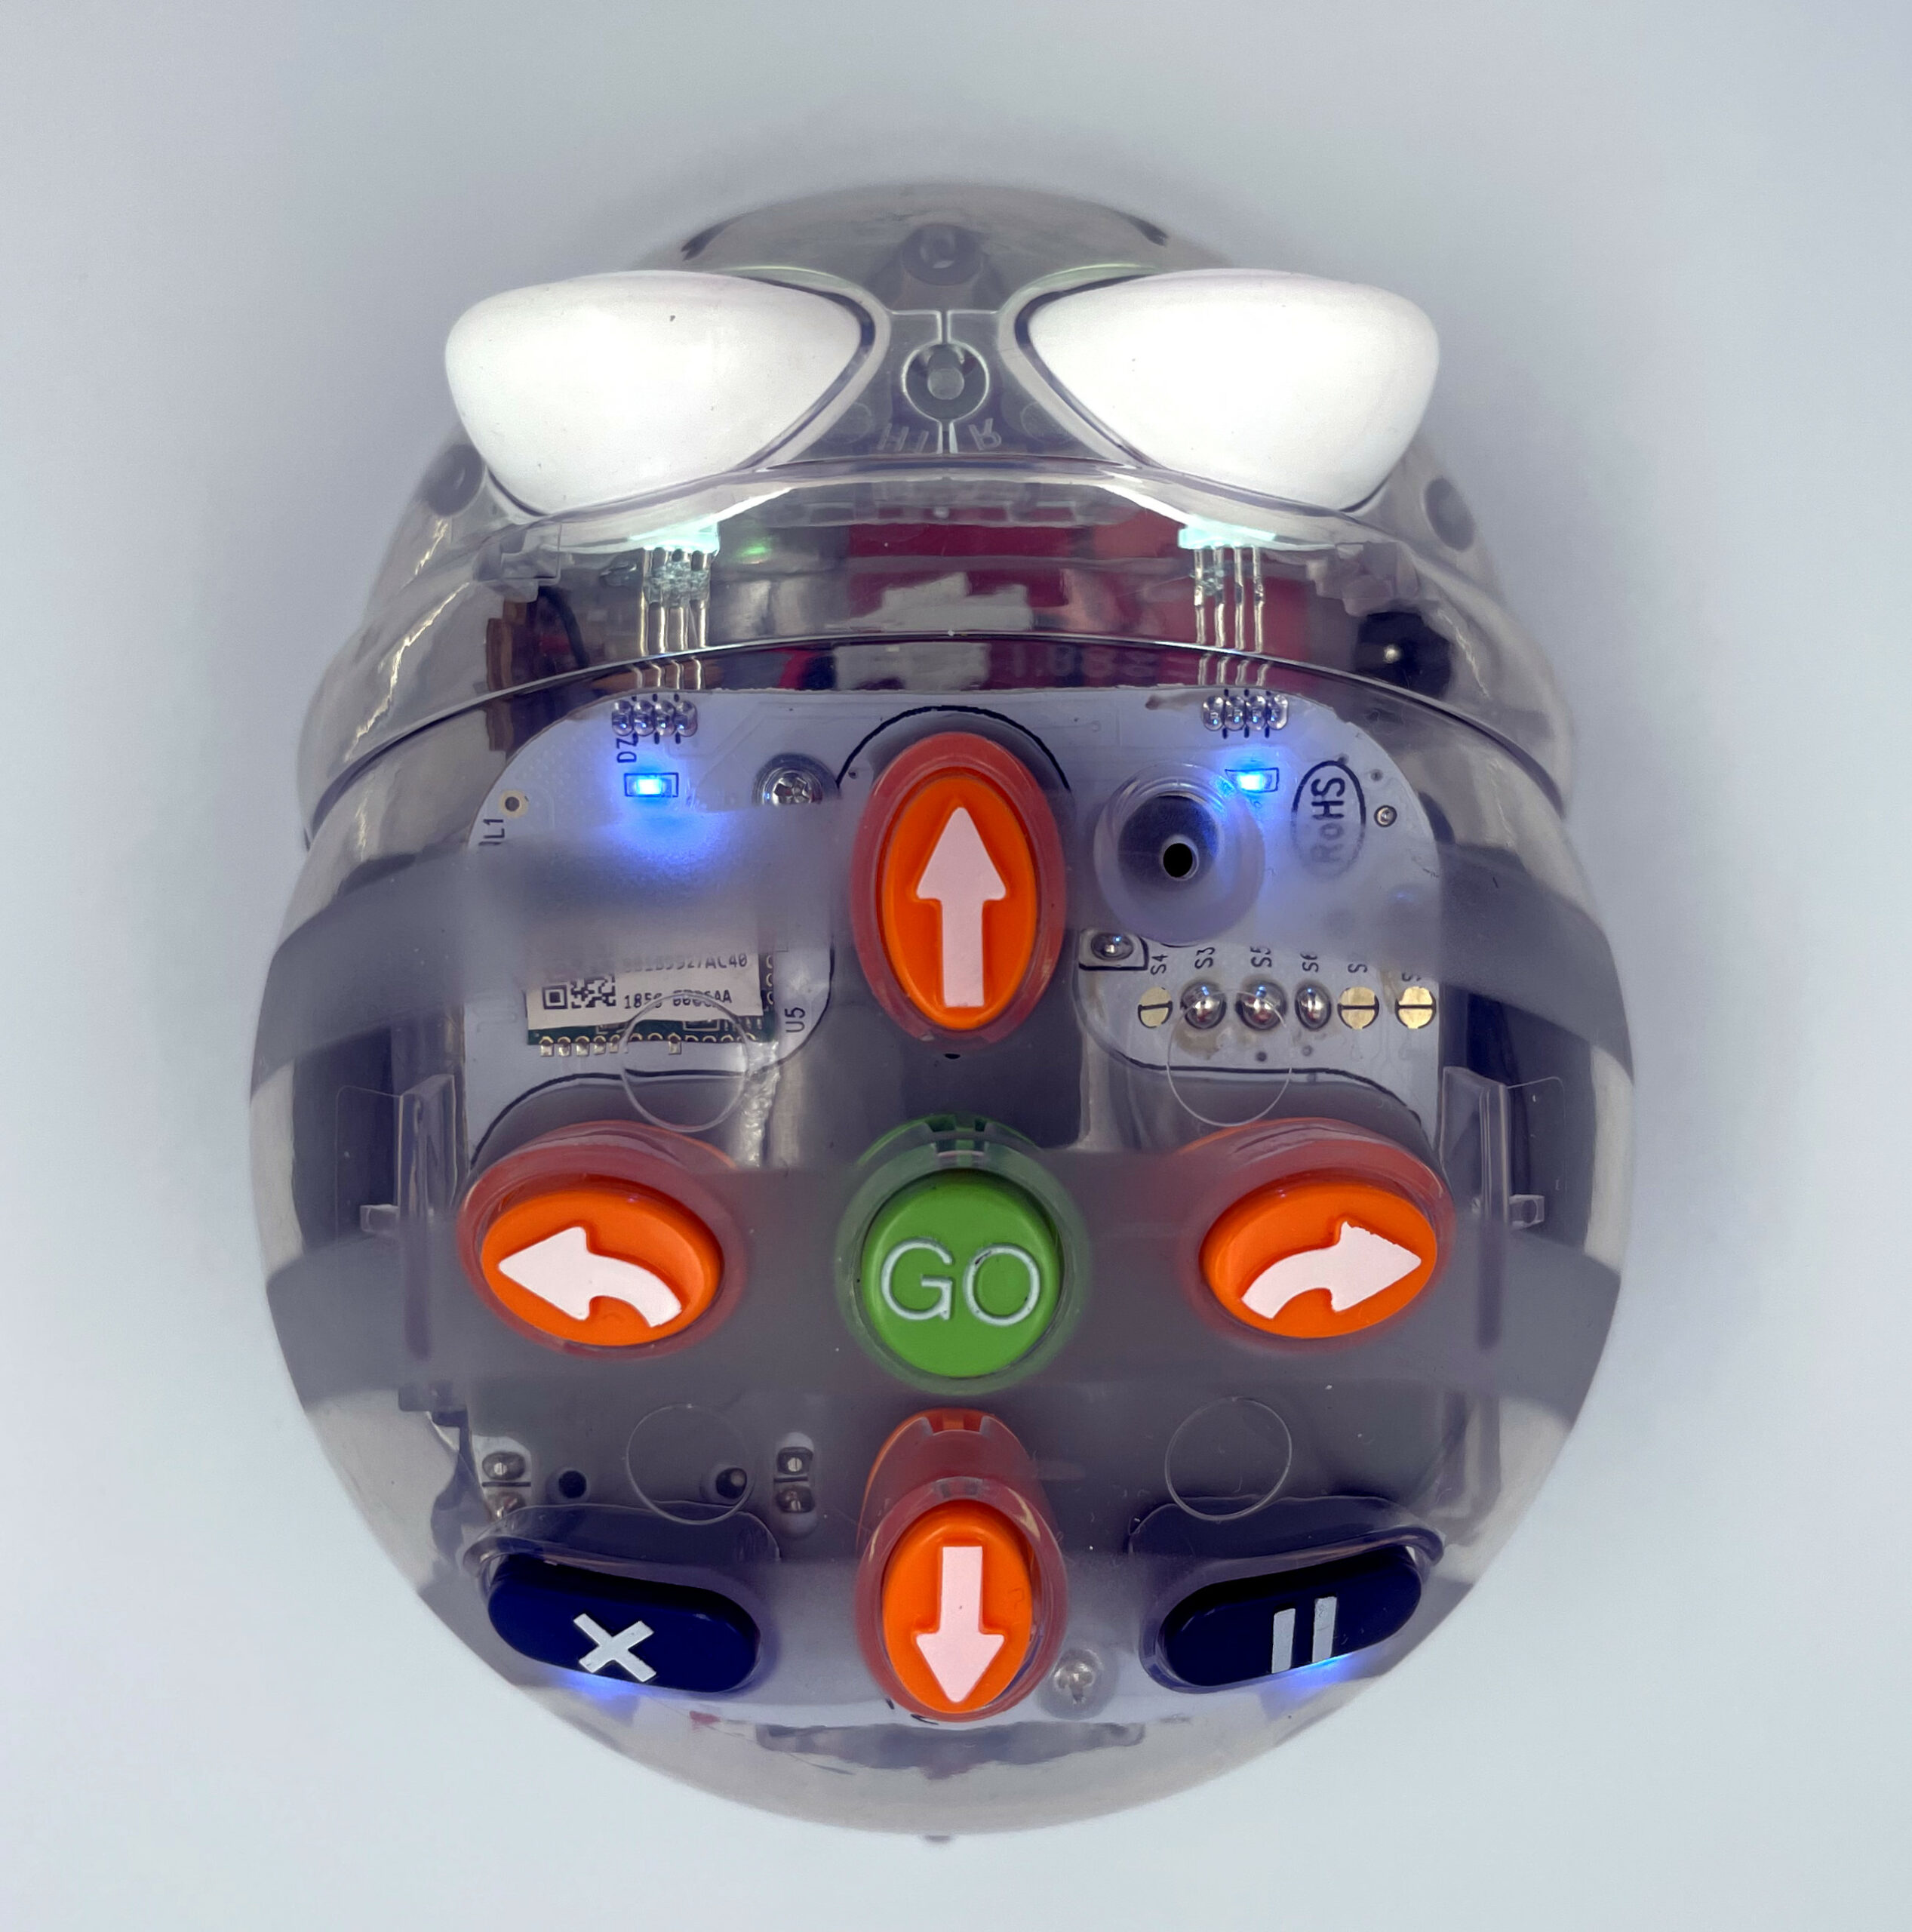 Ansicht der Oberseite des Blue-Bots mit verschiedenen Tasten.